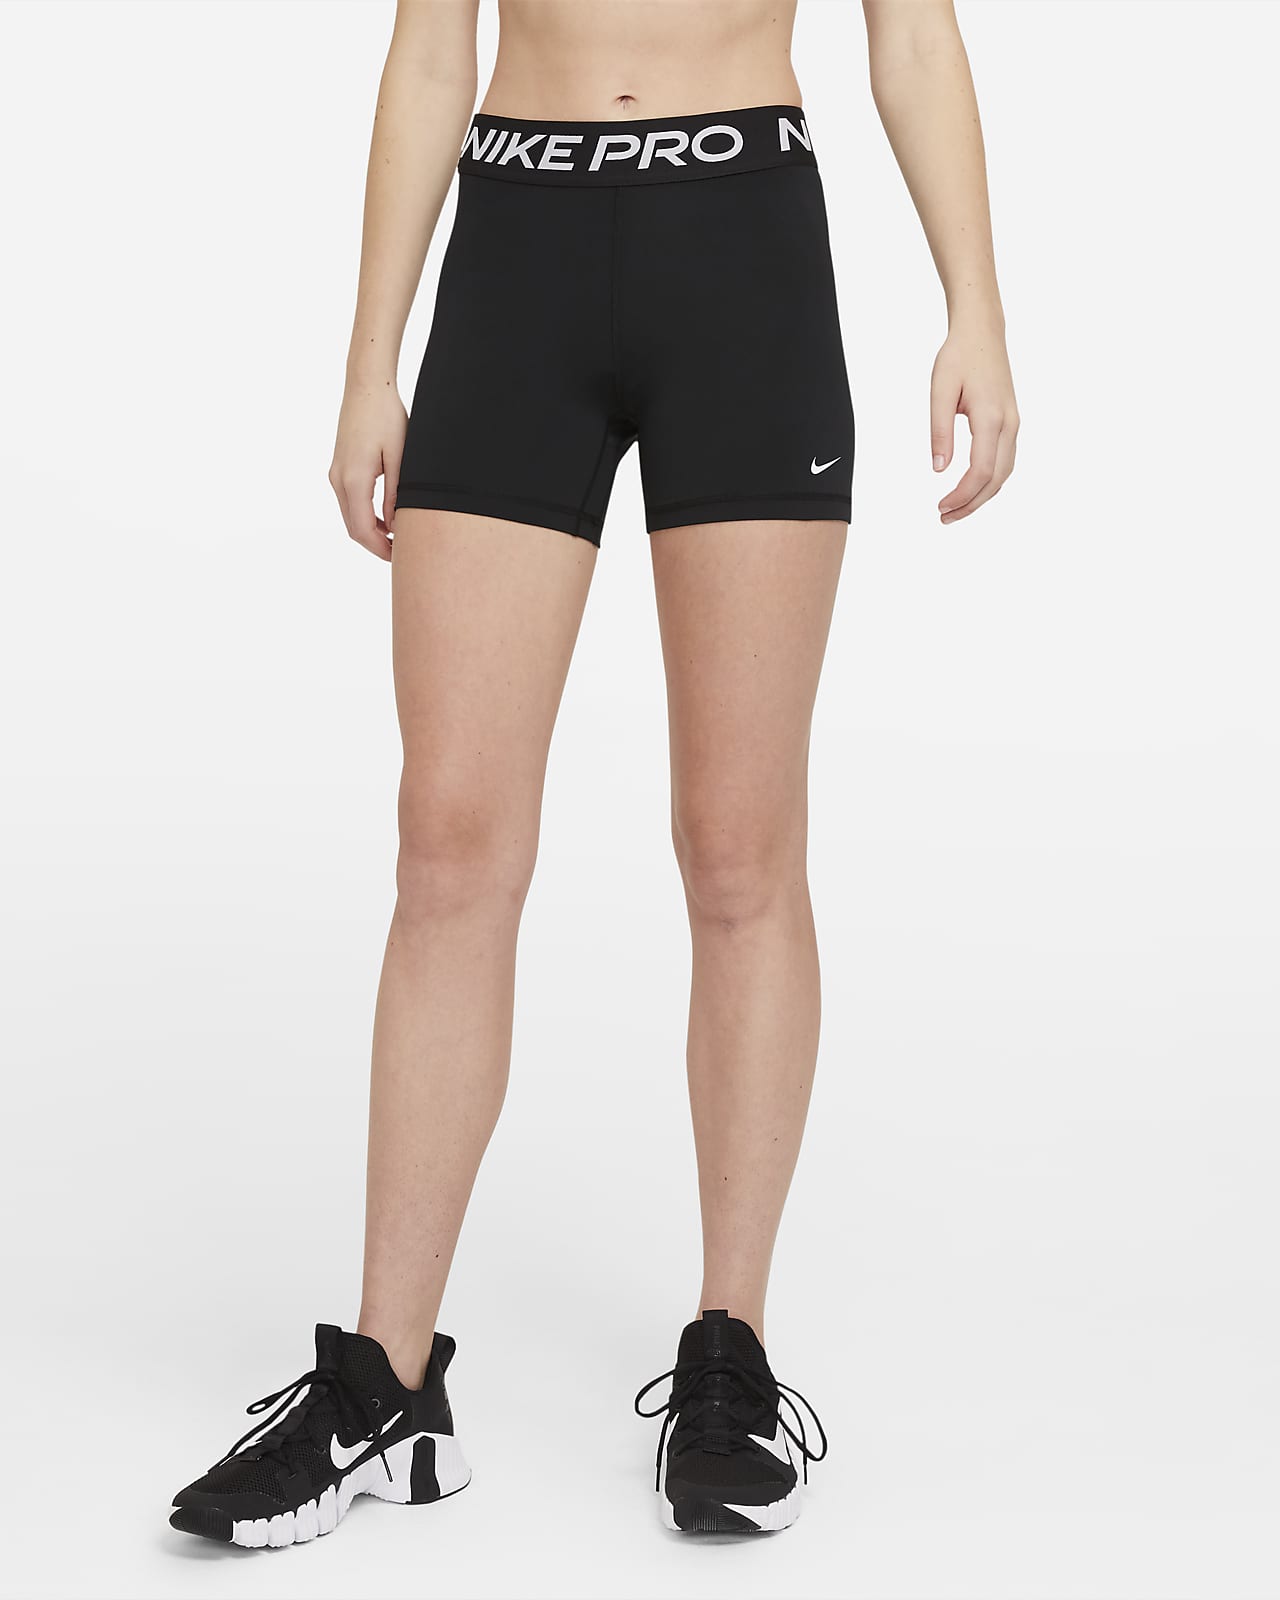 peso Perseo Puno Nike Pro 365 Pantalón corto de 13 cm - Mujer. Nike ES